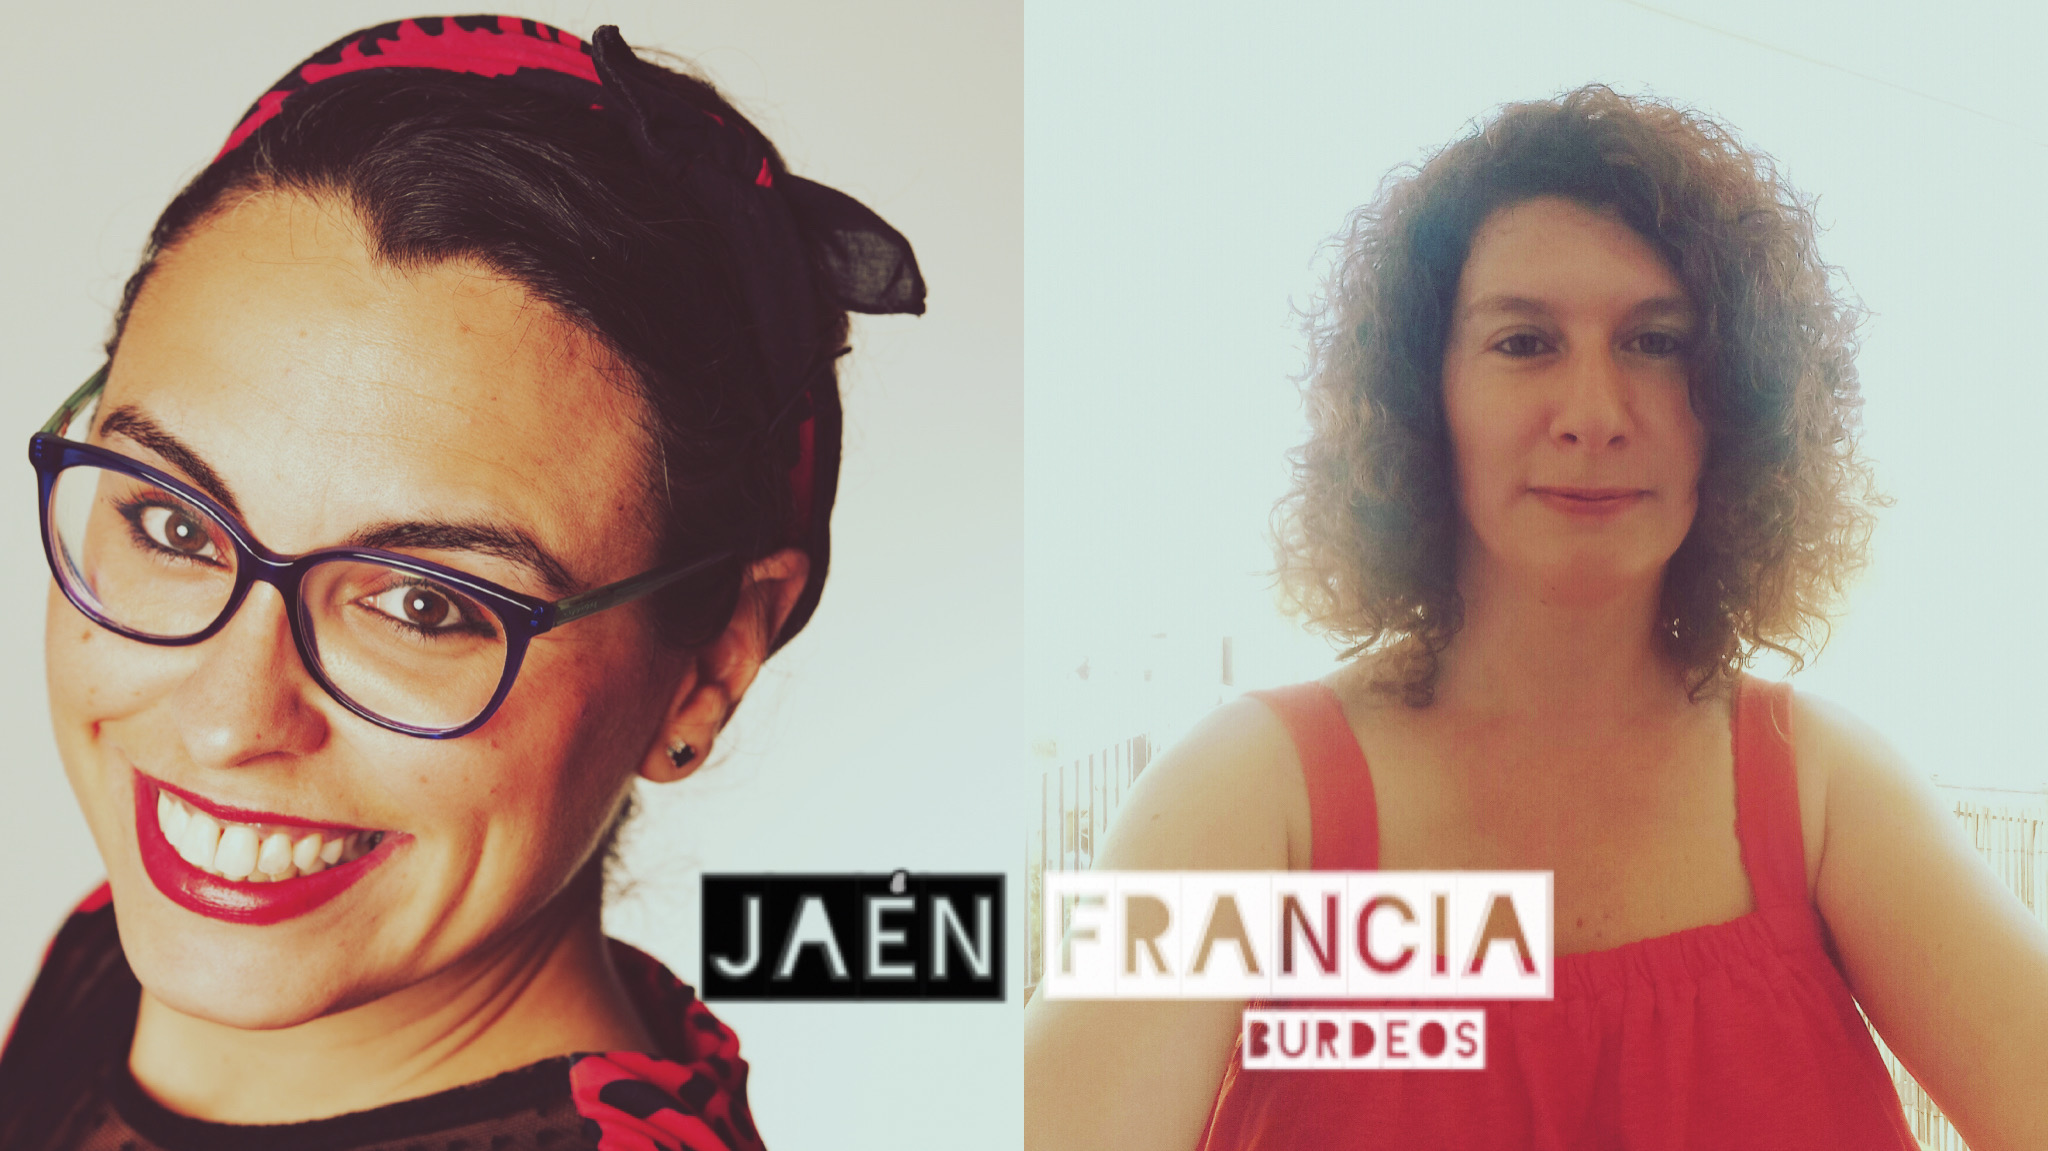 7. Diálogo Francia – Jaén, con Viviane Albenga y Paz Madrid